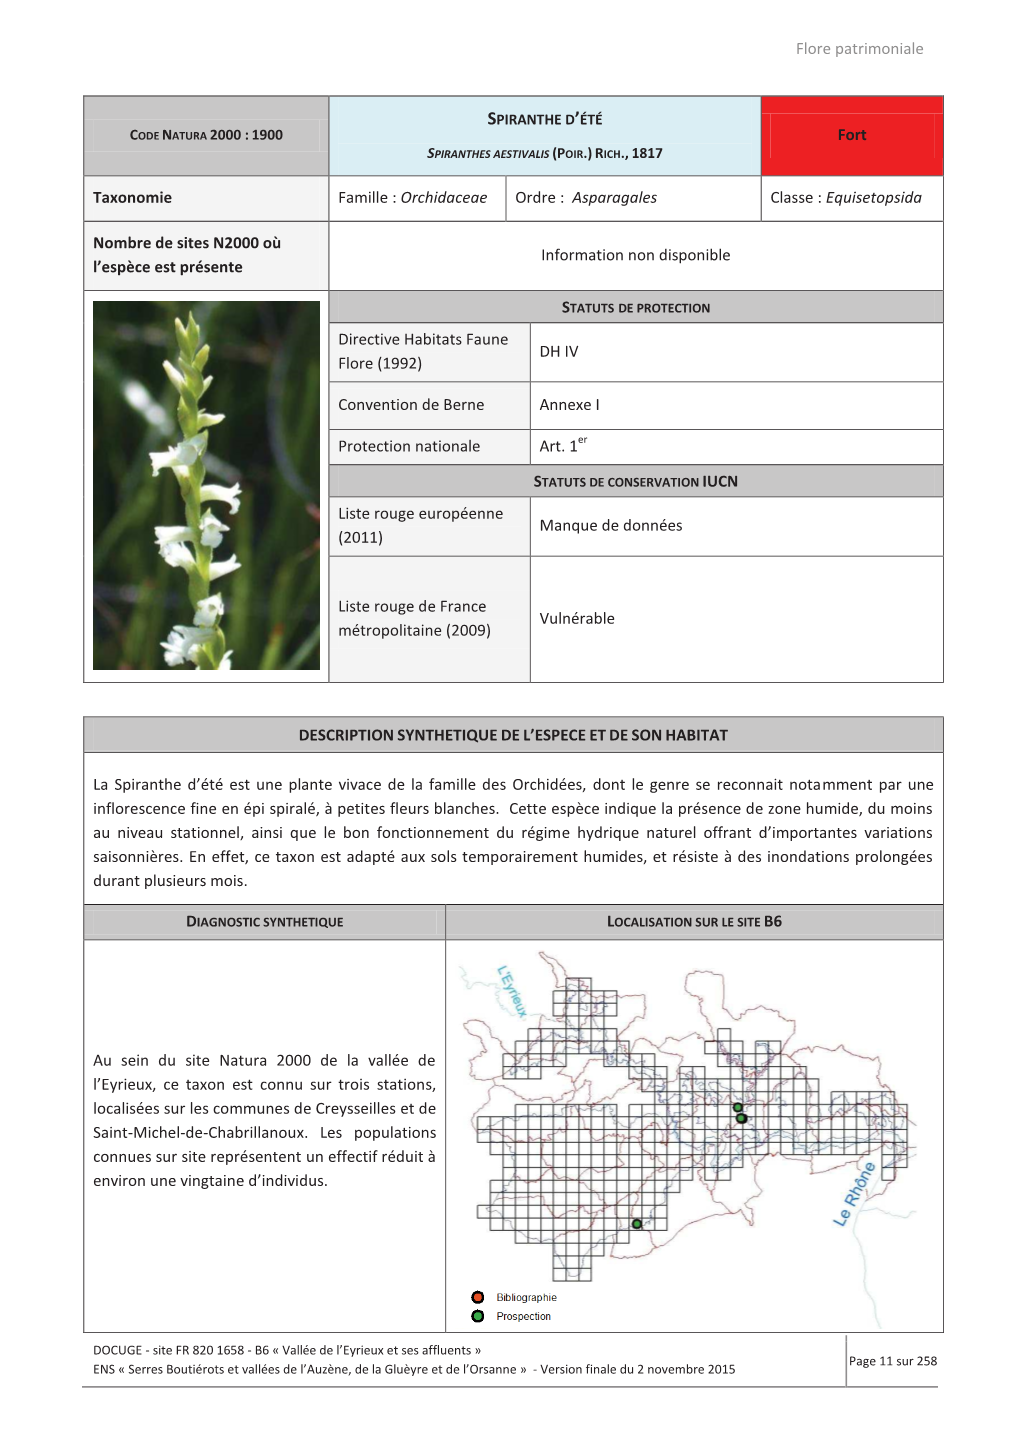 Flore Patrimoniale Fort Taxonomie Famille : Orchidaceae Ordre